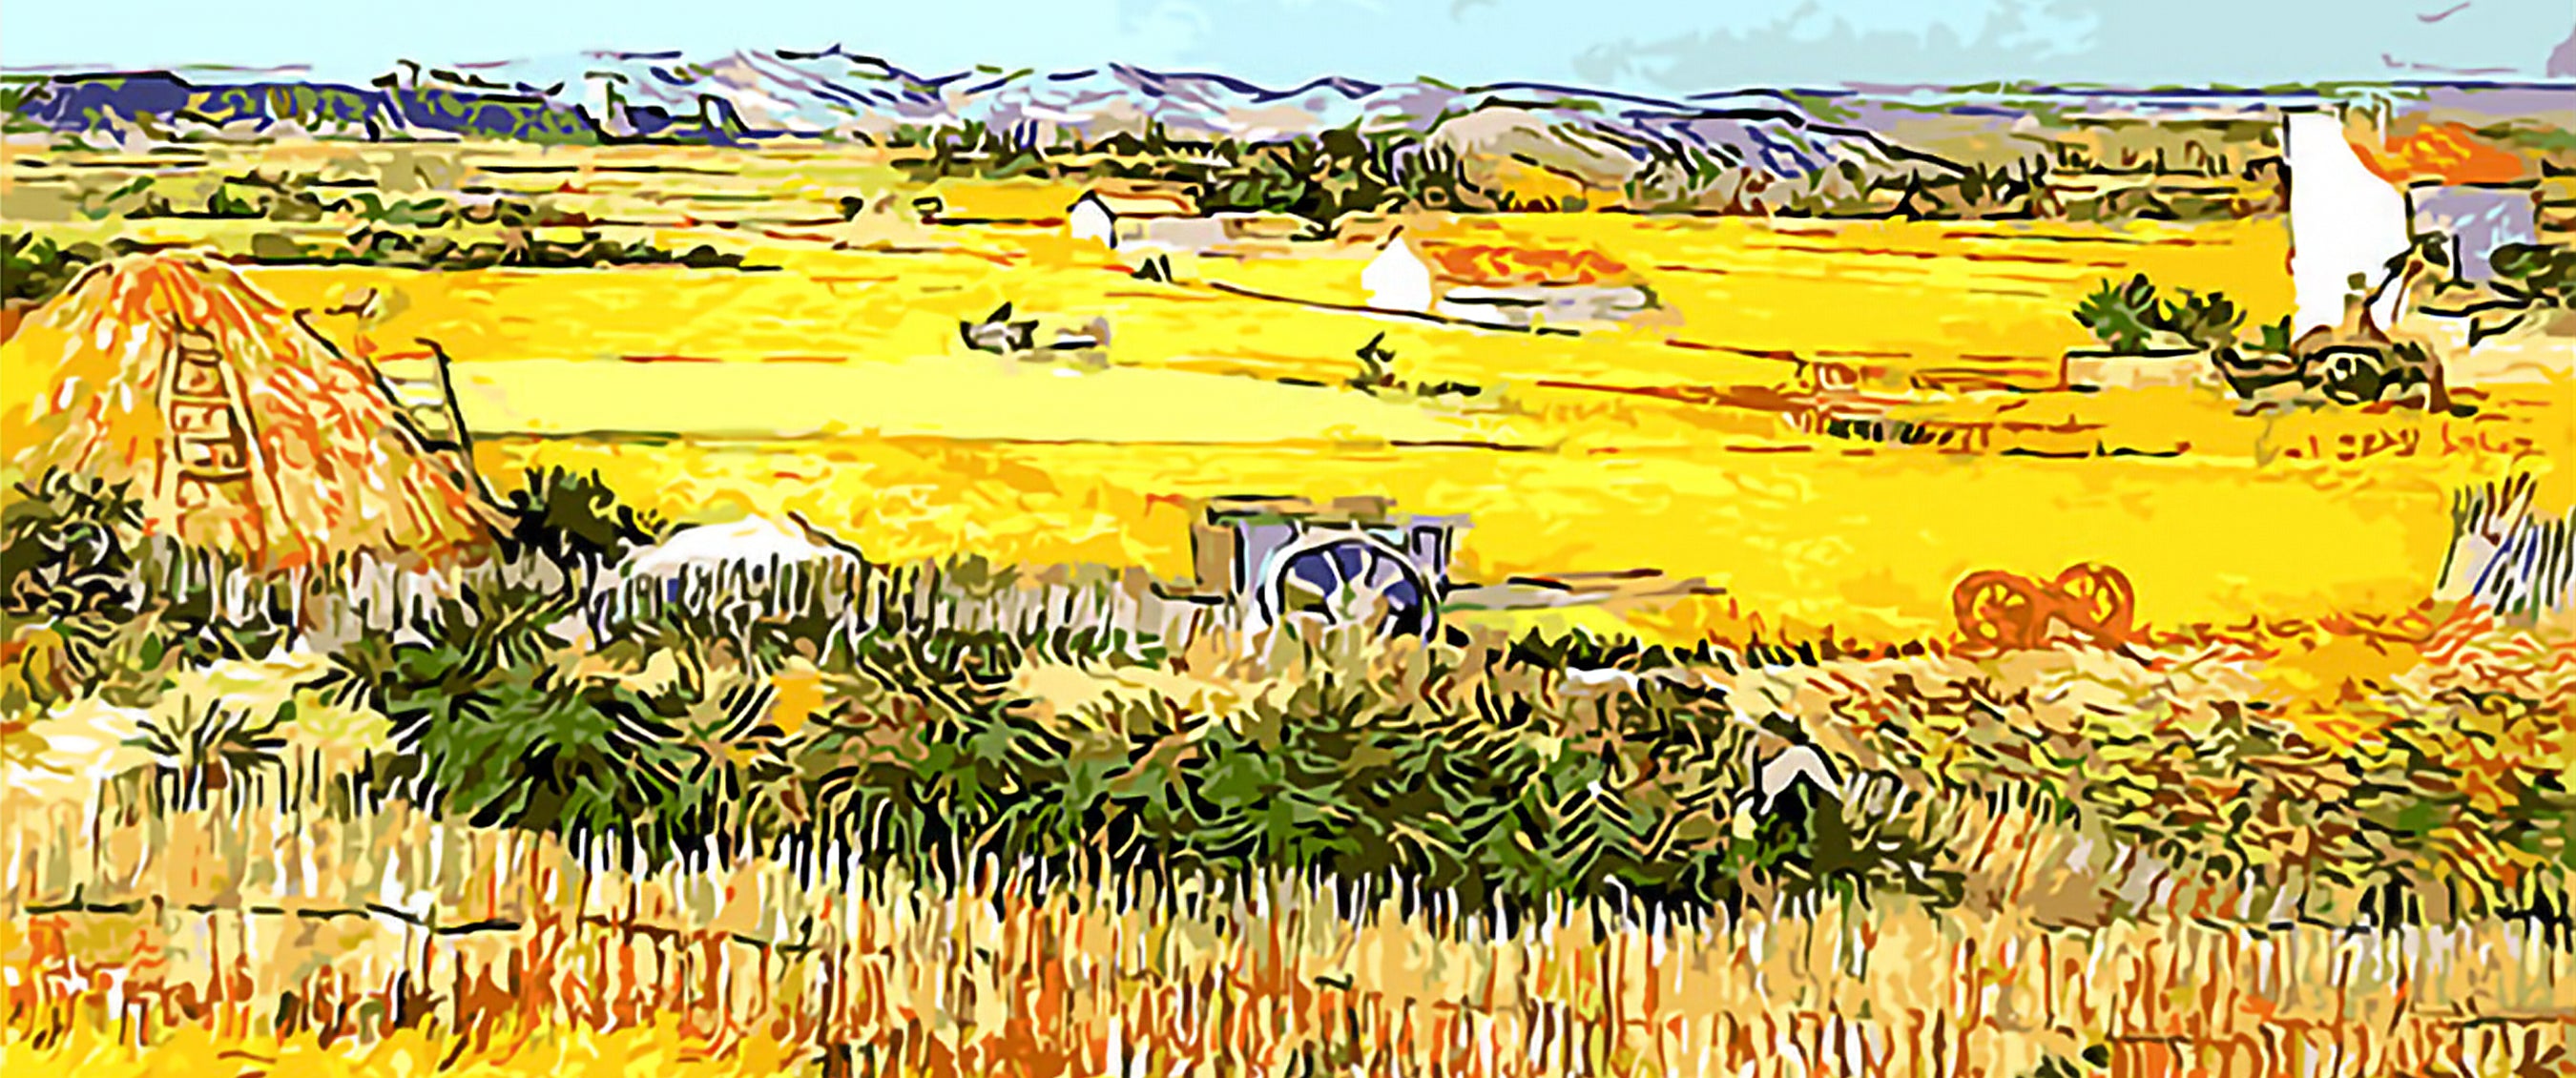 DIY Painting By Numbers -  Van Gogh Harvest - 3 Pieces (16"x20" / 40x50cm)